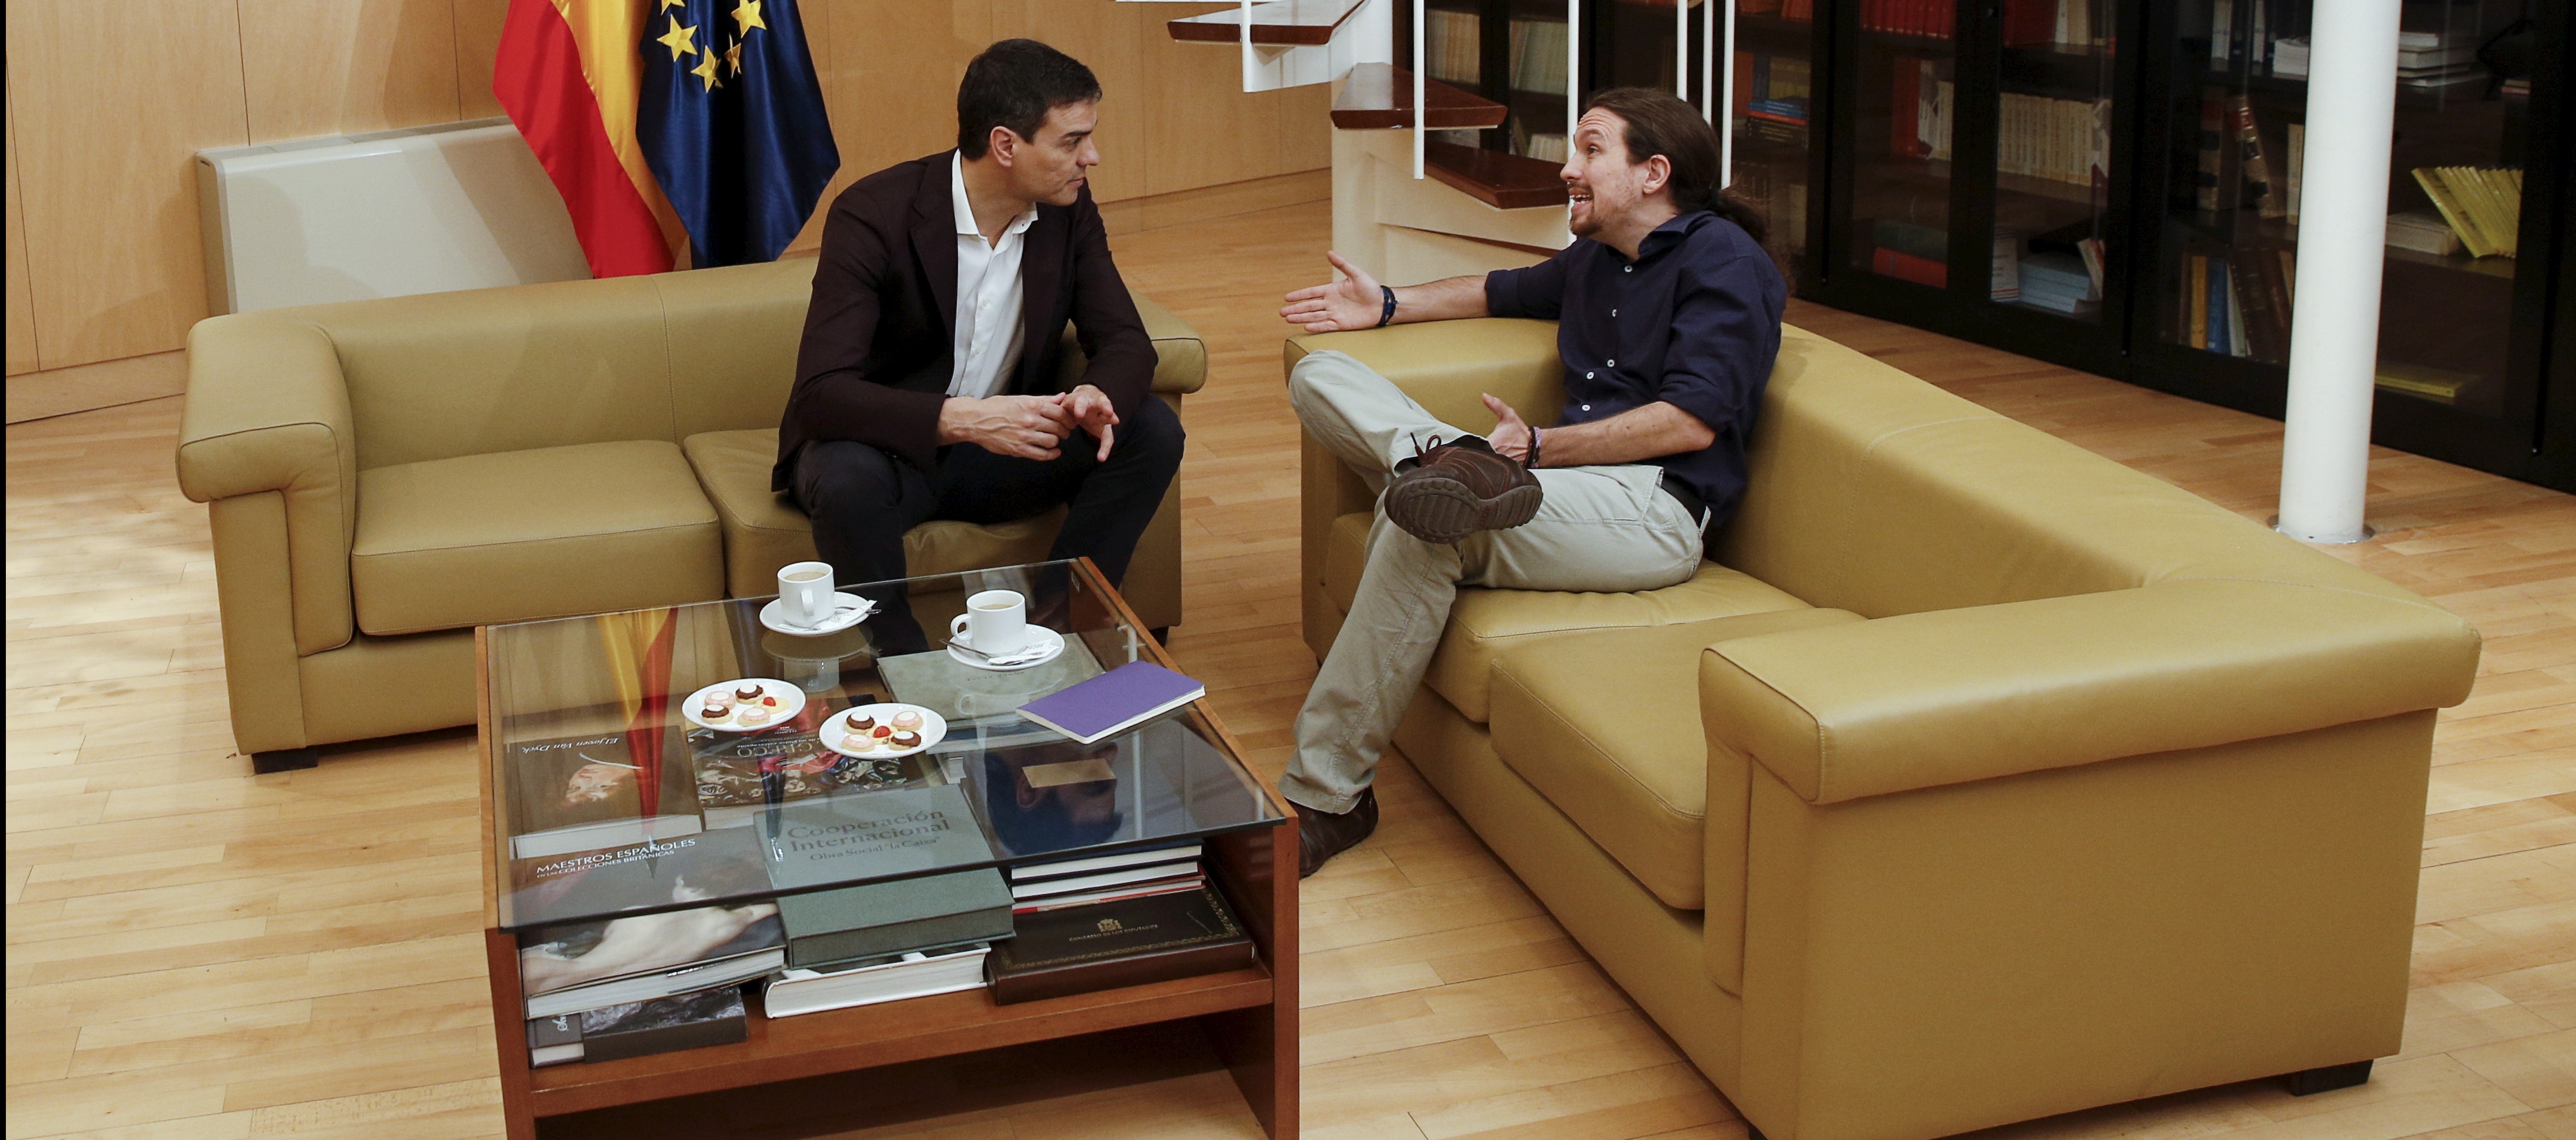 Reunión entre Pablo Iglesias y Pedro Sánchez. FOTO: Reuters